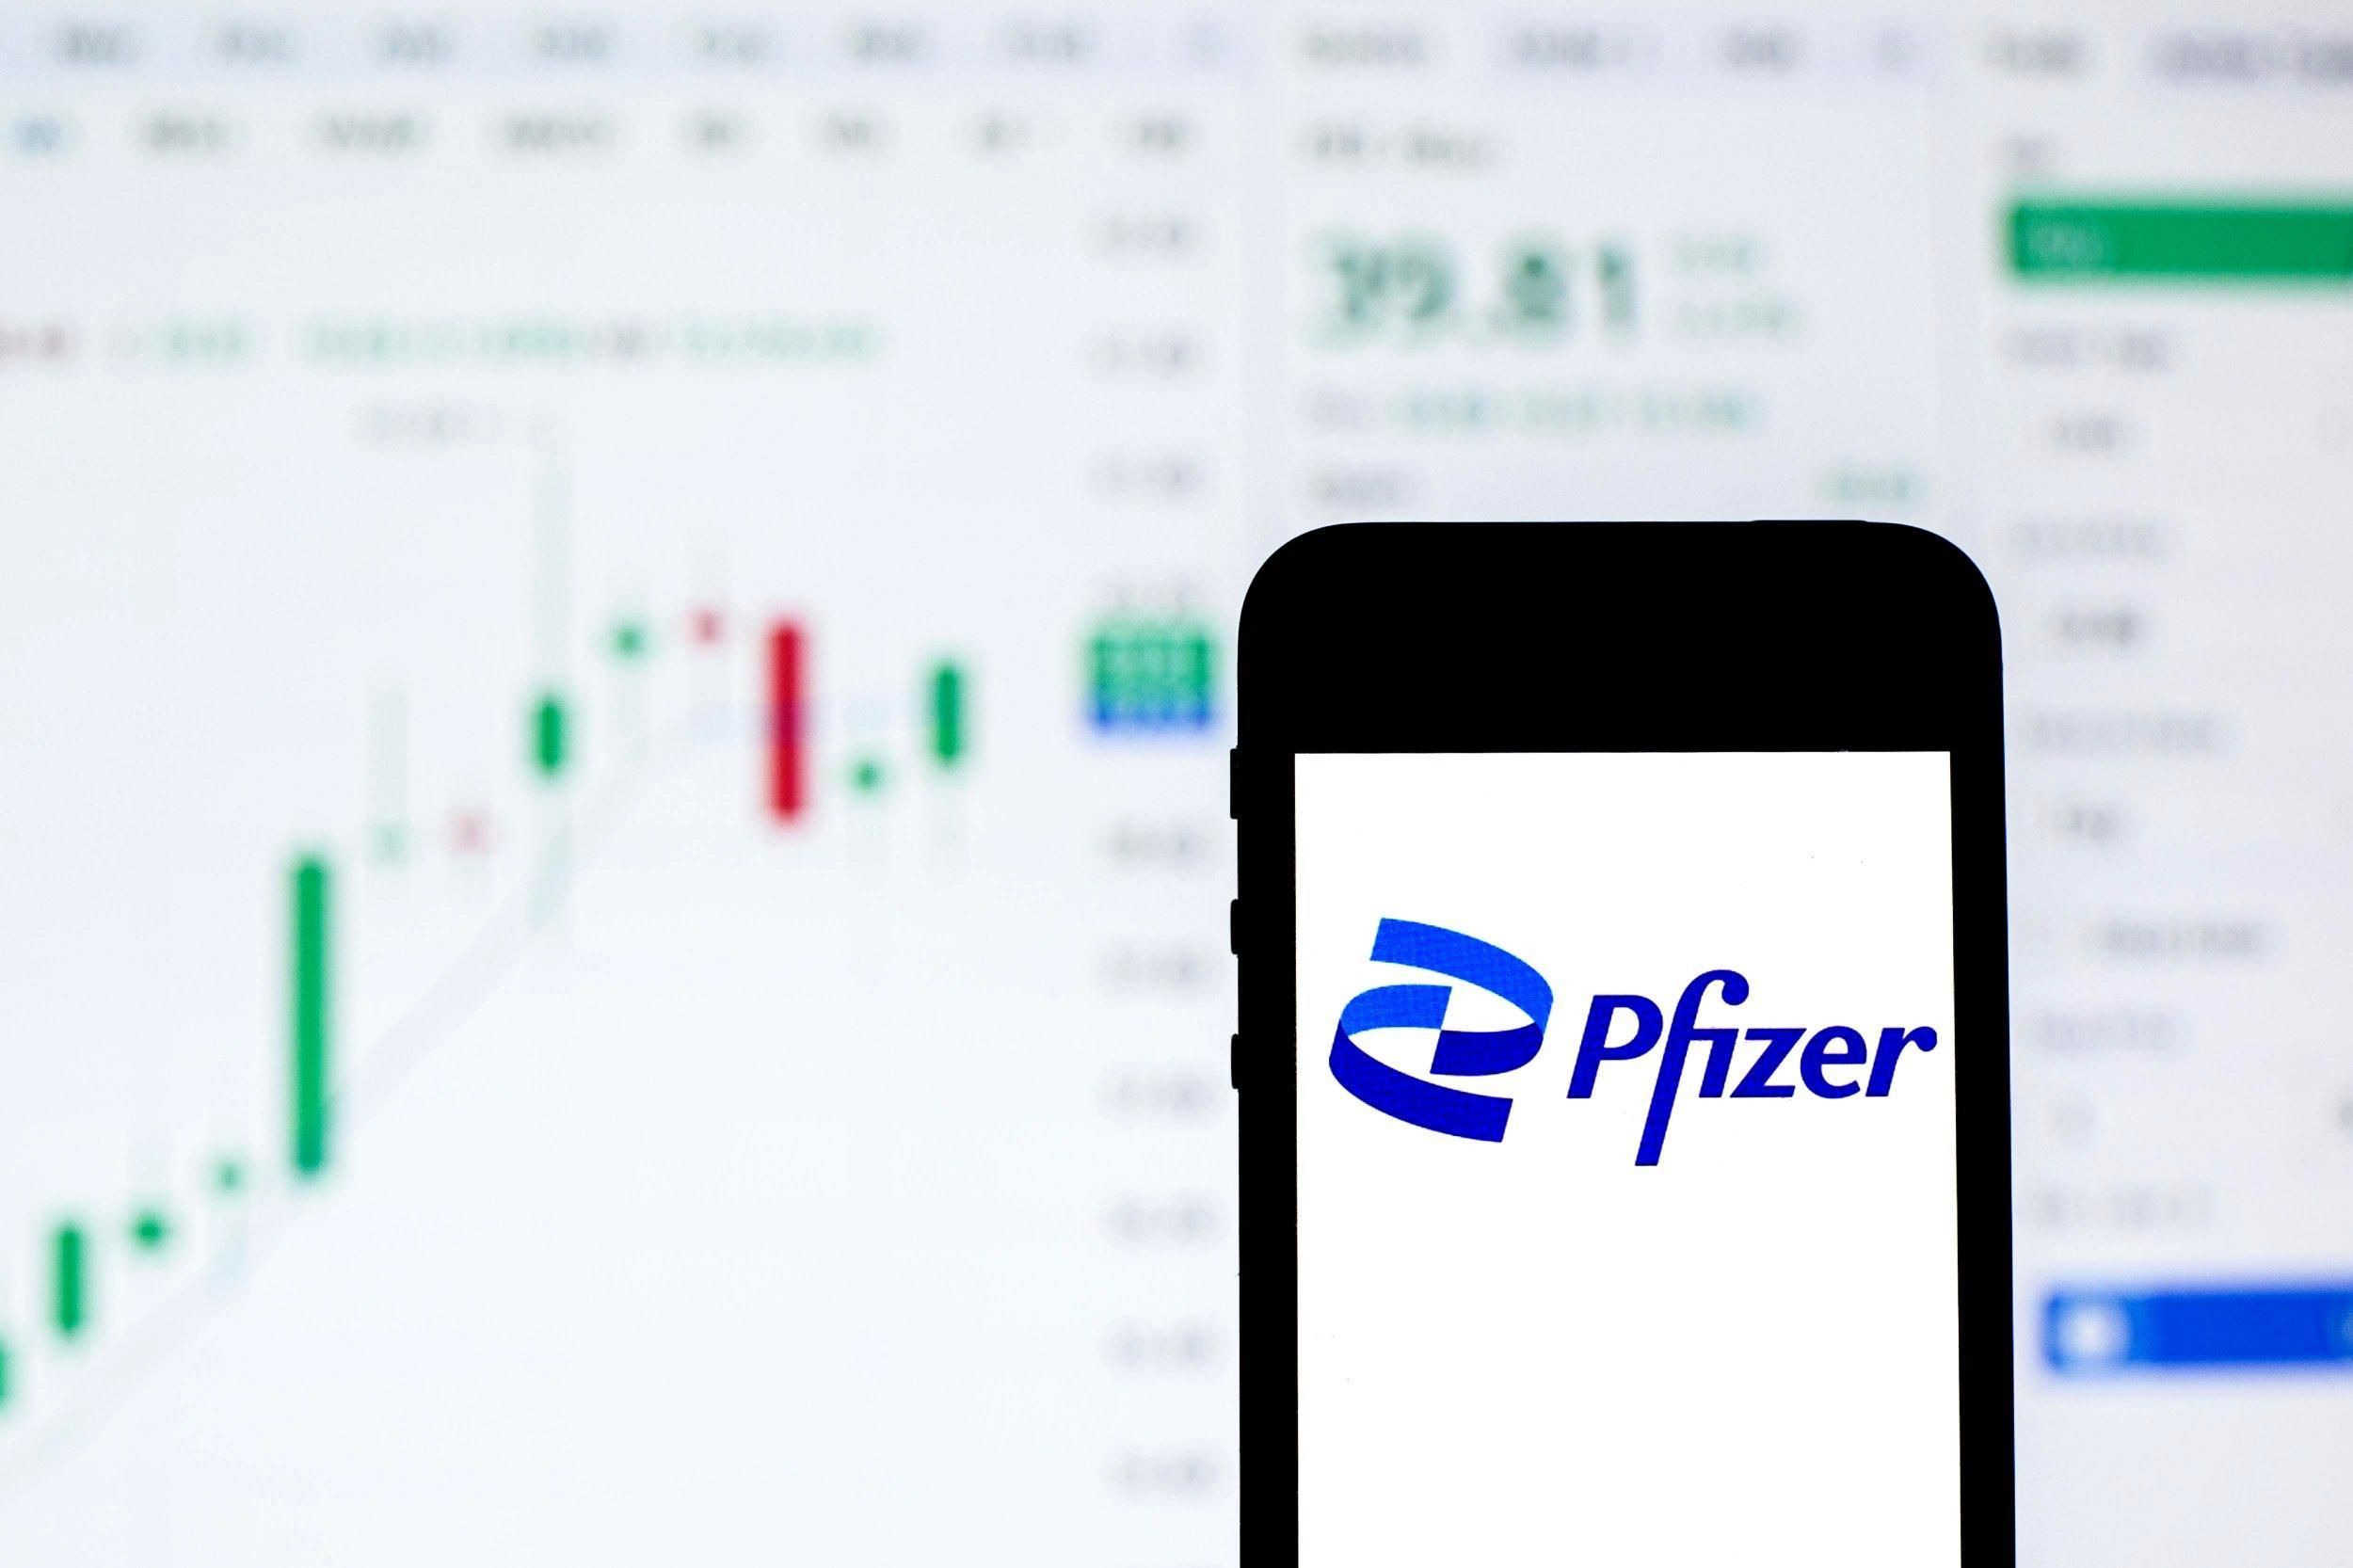 Нові можливості для інвестицій: українцям дозволили купувати акції Pfizer - Україна новини - 24 Канал